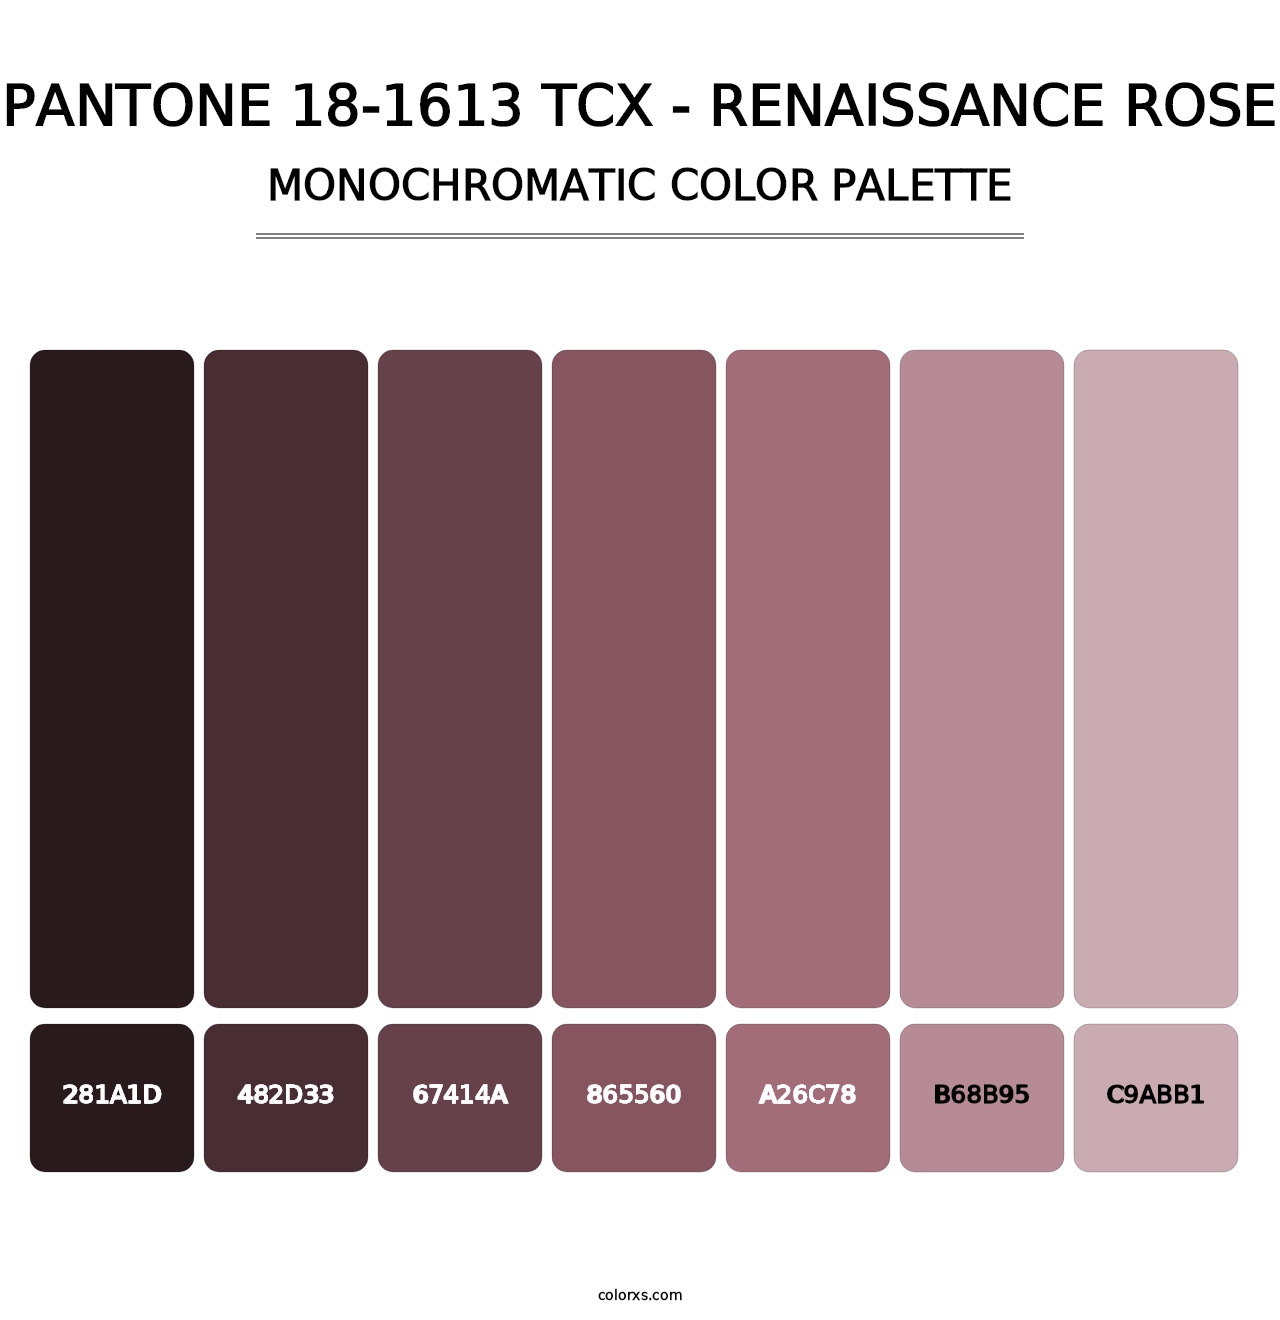 PANTONE 18-1613 TCX - Renaissance Rose - Monochromatic Color Palette